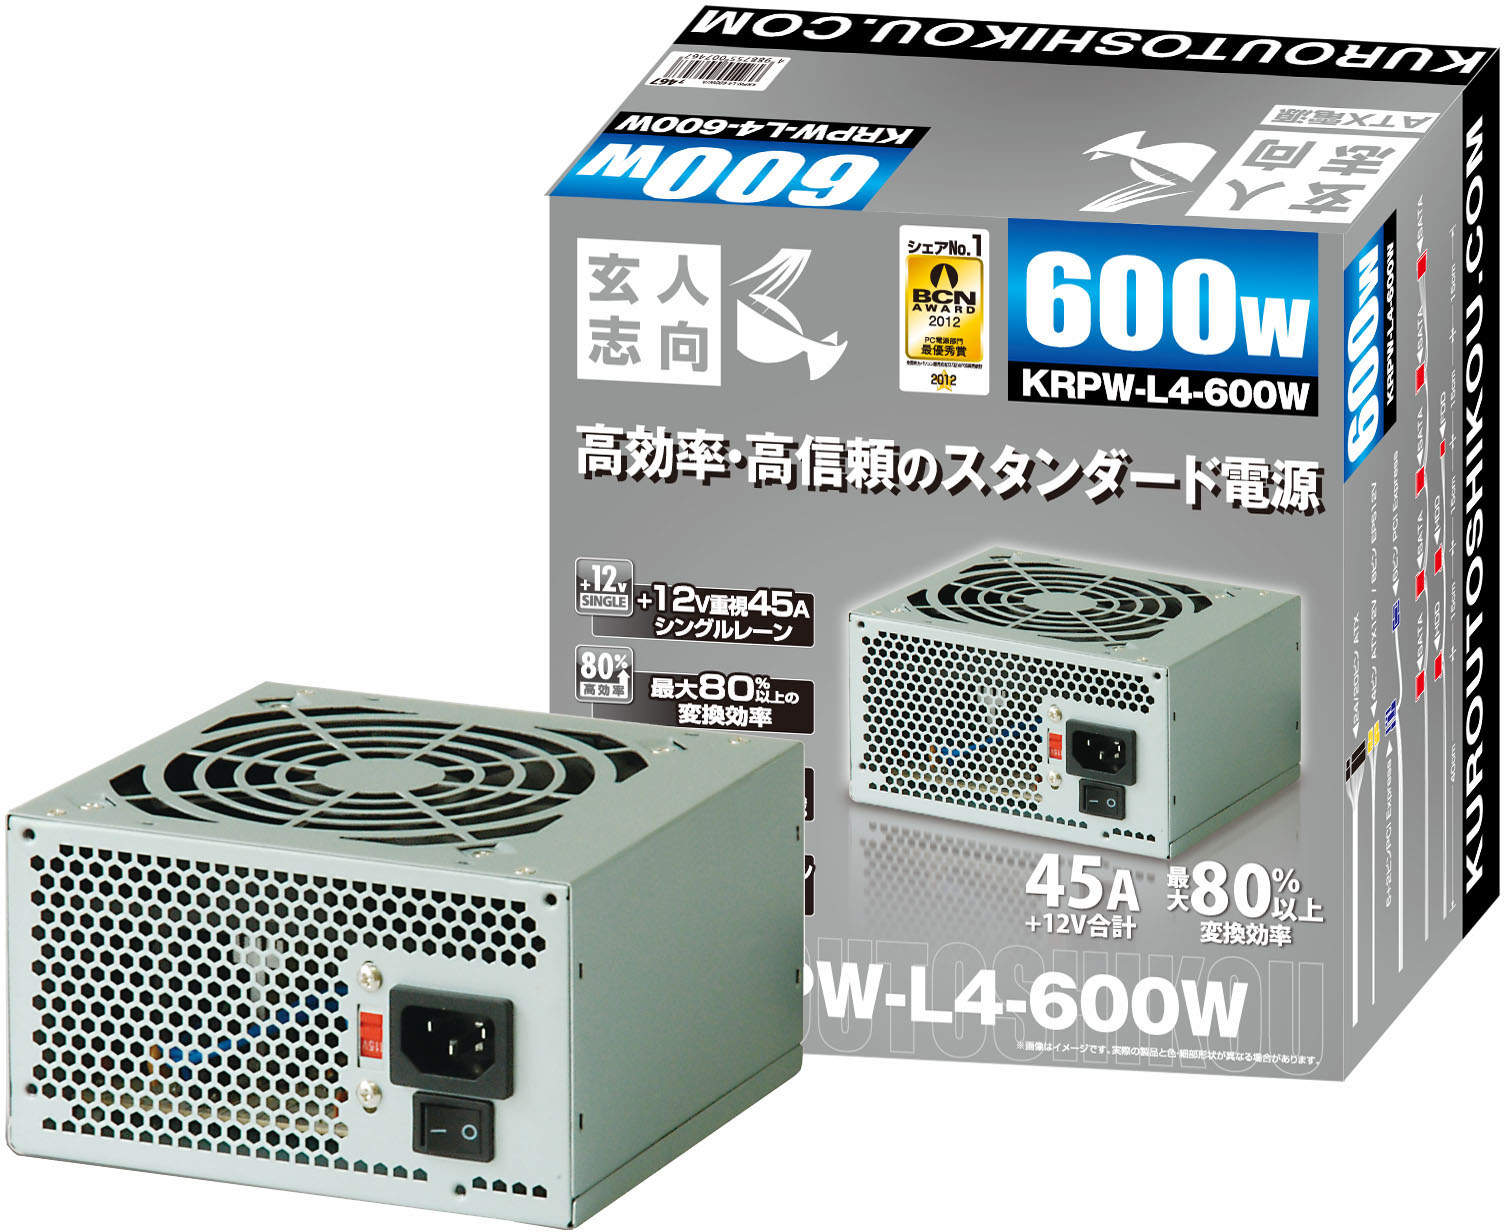 KRPW-L4-600W | ATX電源 600W | 玄人志向